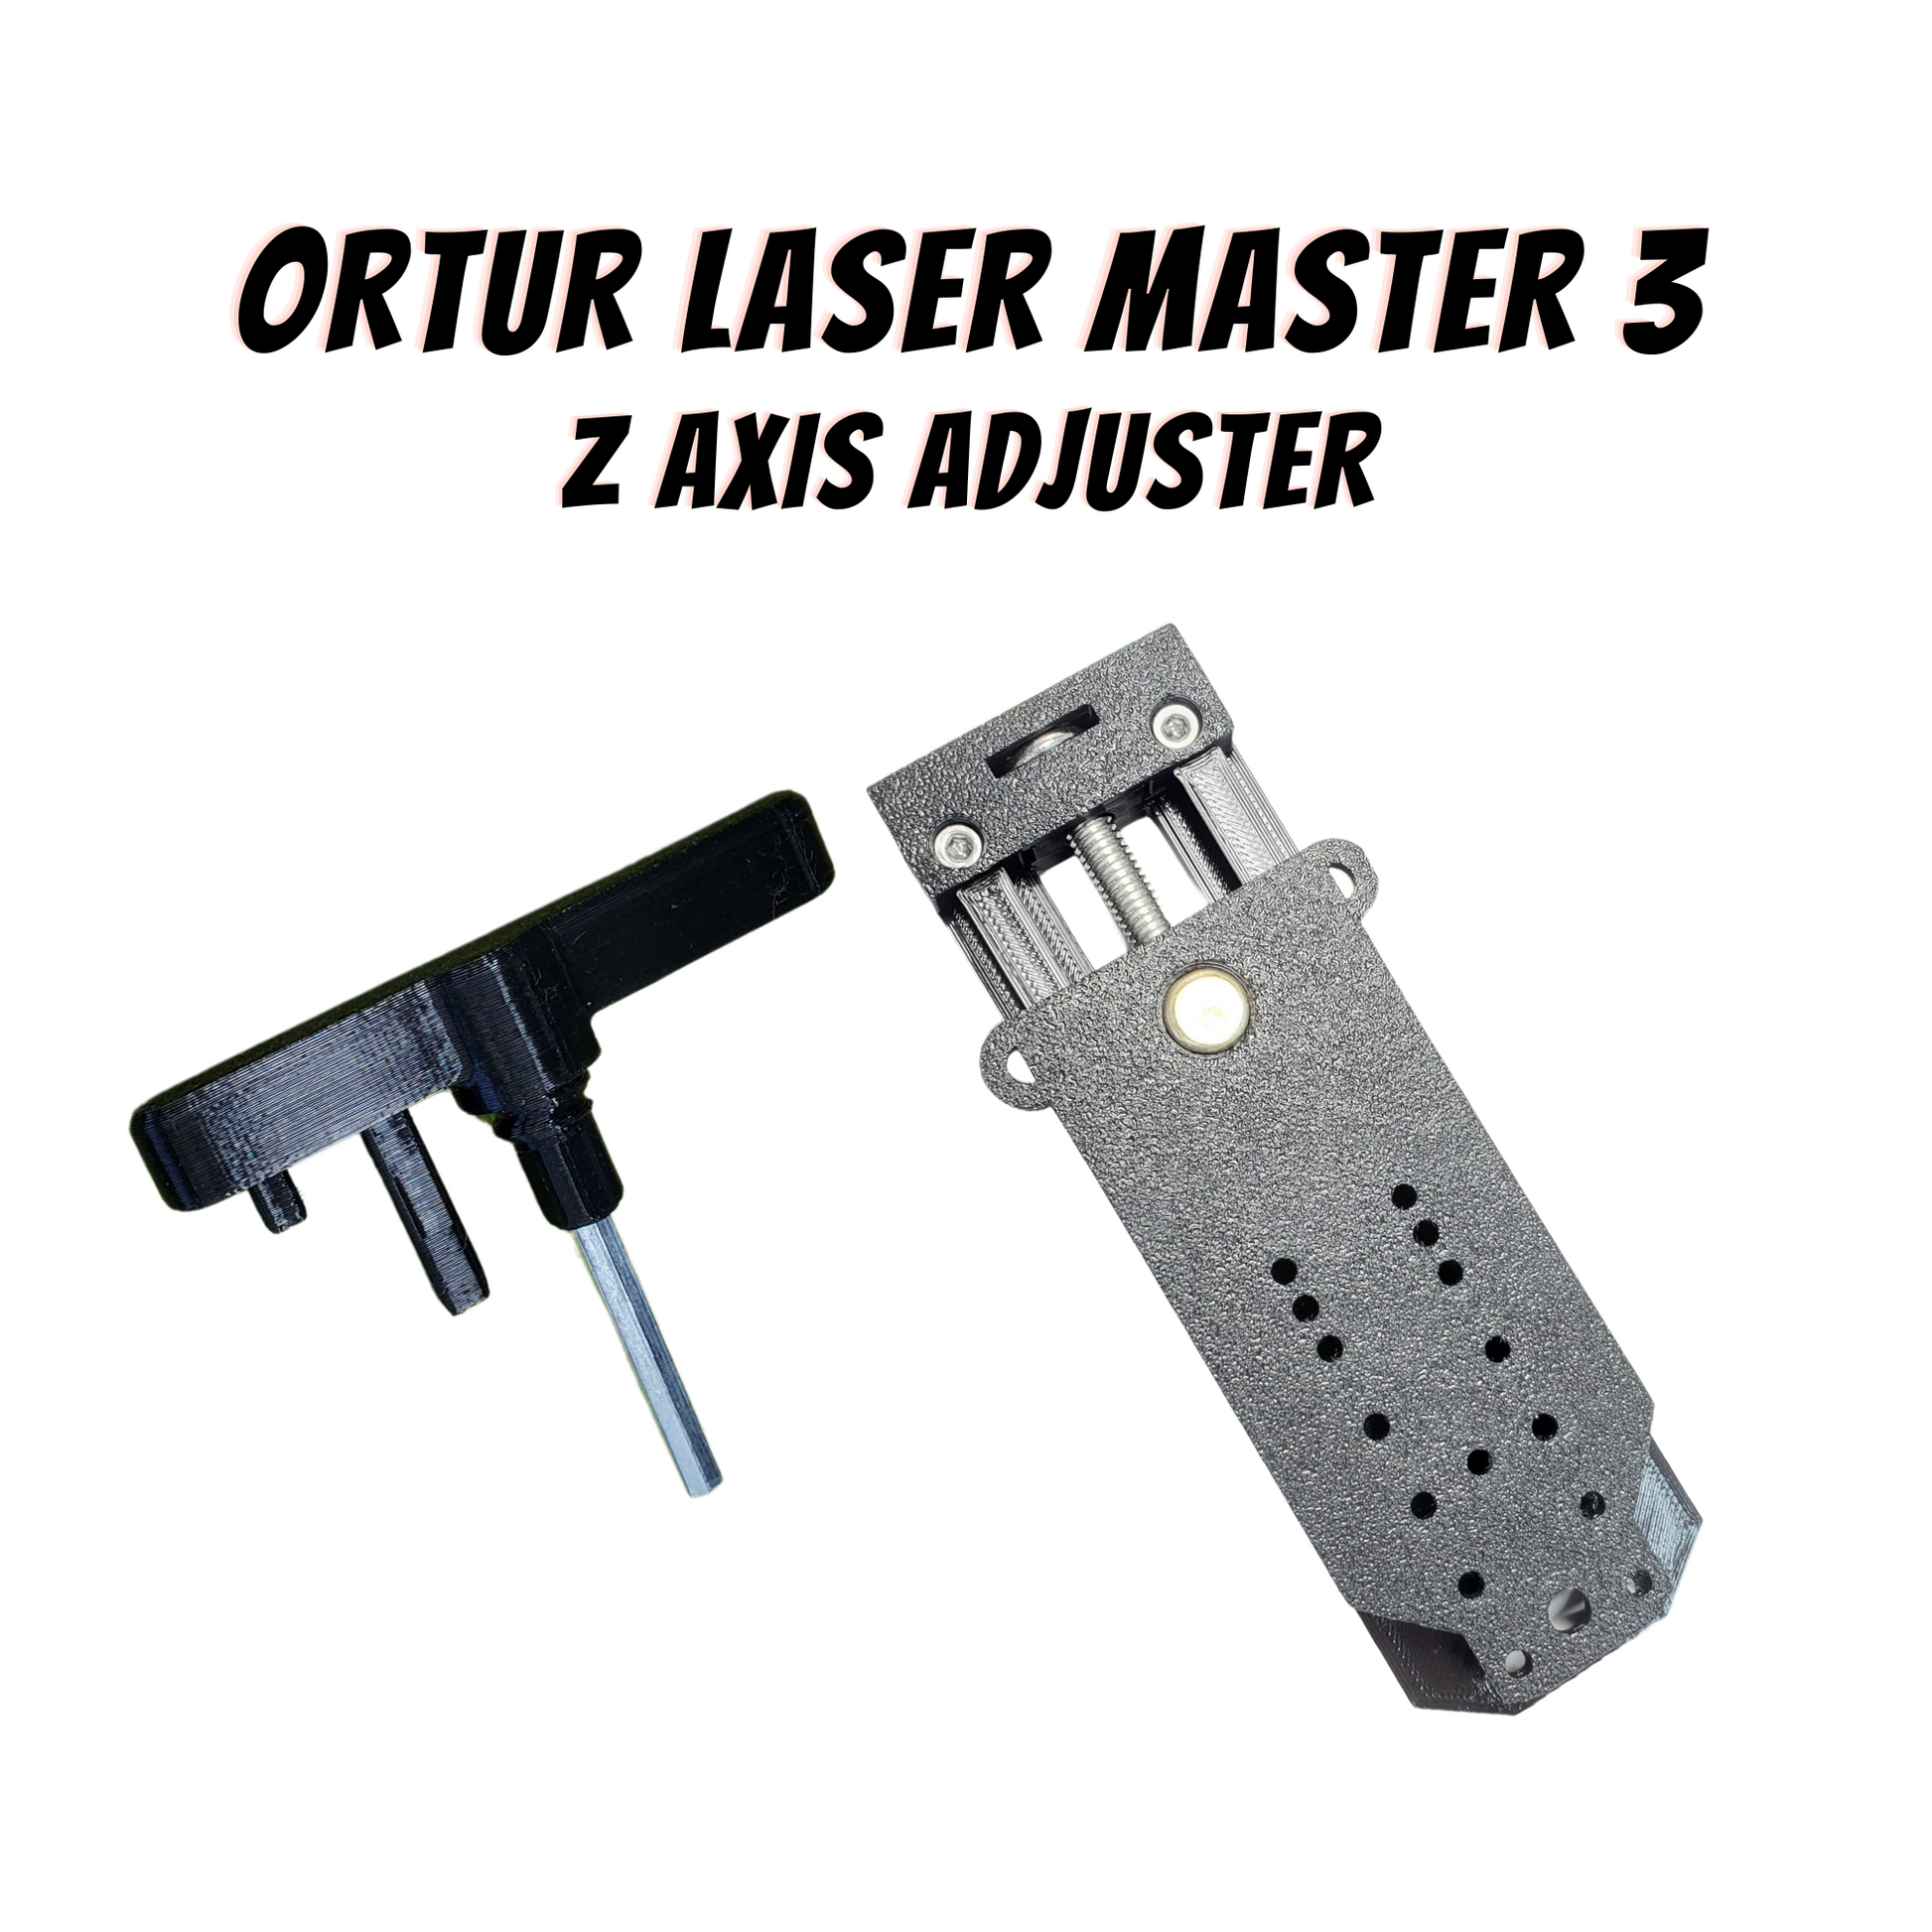 Ortur Laser Master 3 Model Z Axis Adjuster – King Gubby